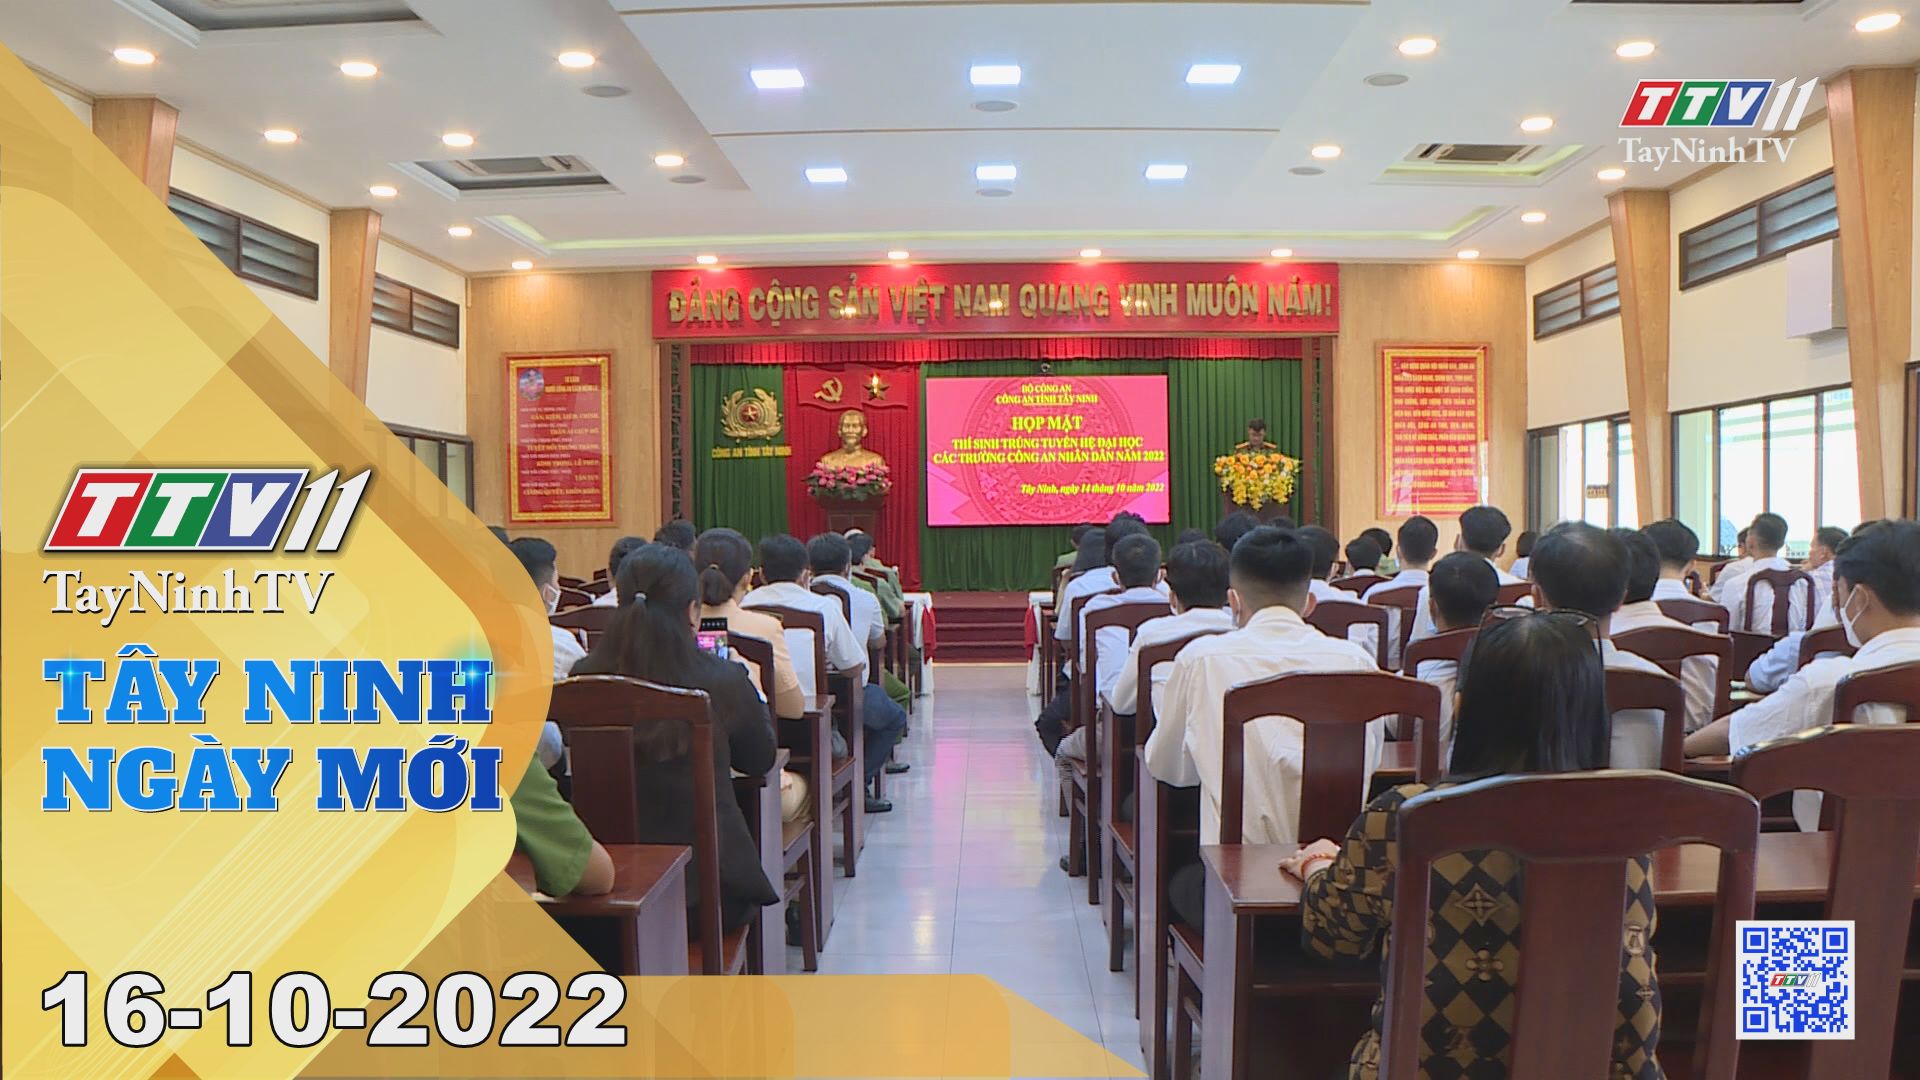 Tây Ninh ngày mới 16-10-2022 | Tin tức hôm nay | TayNinhTV